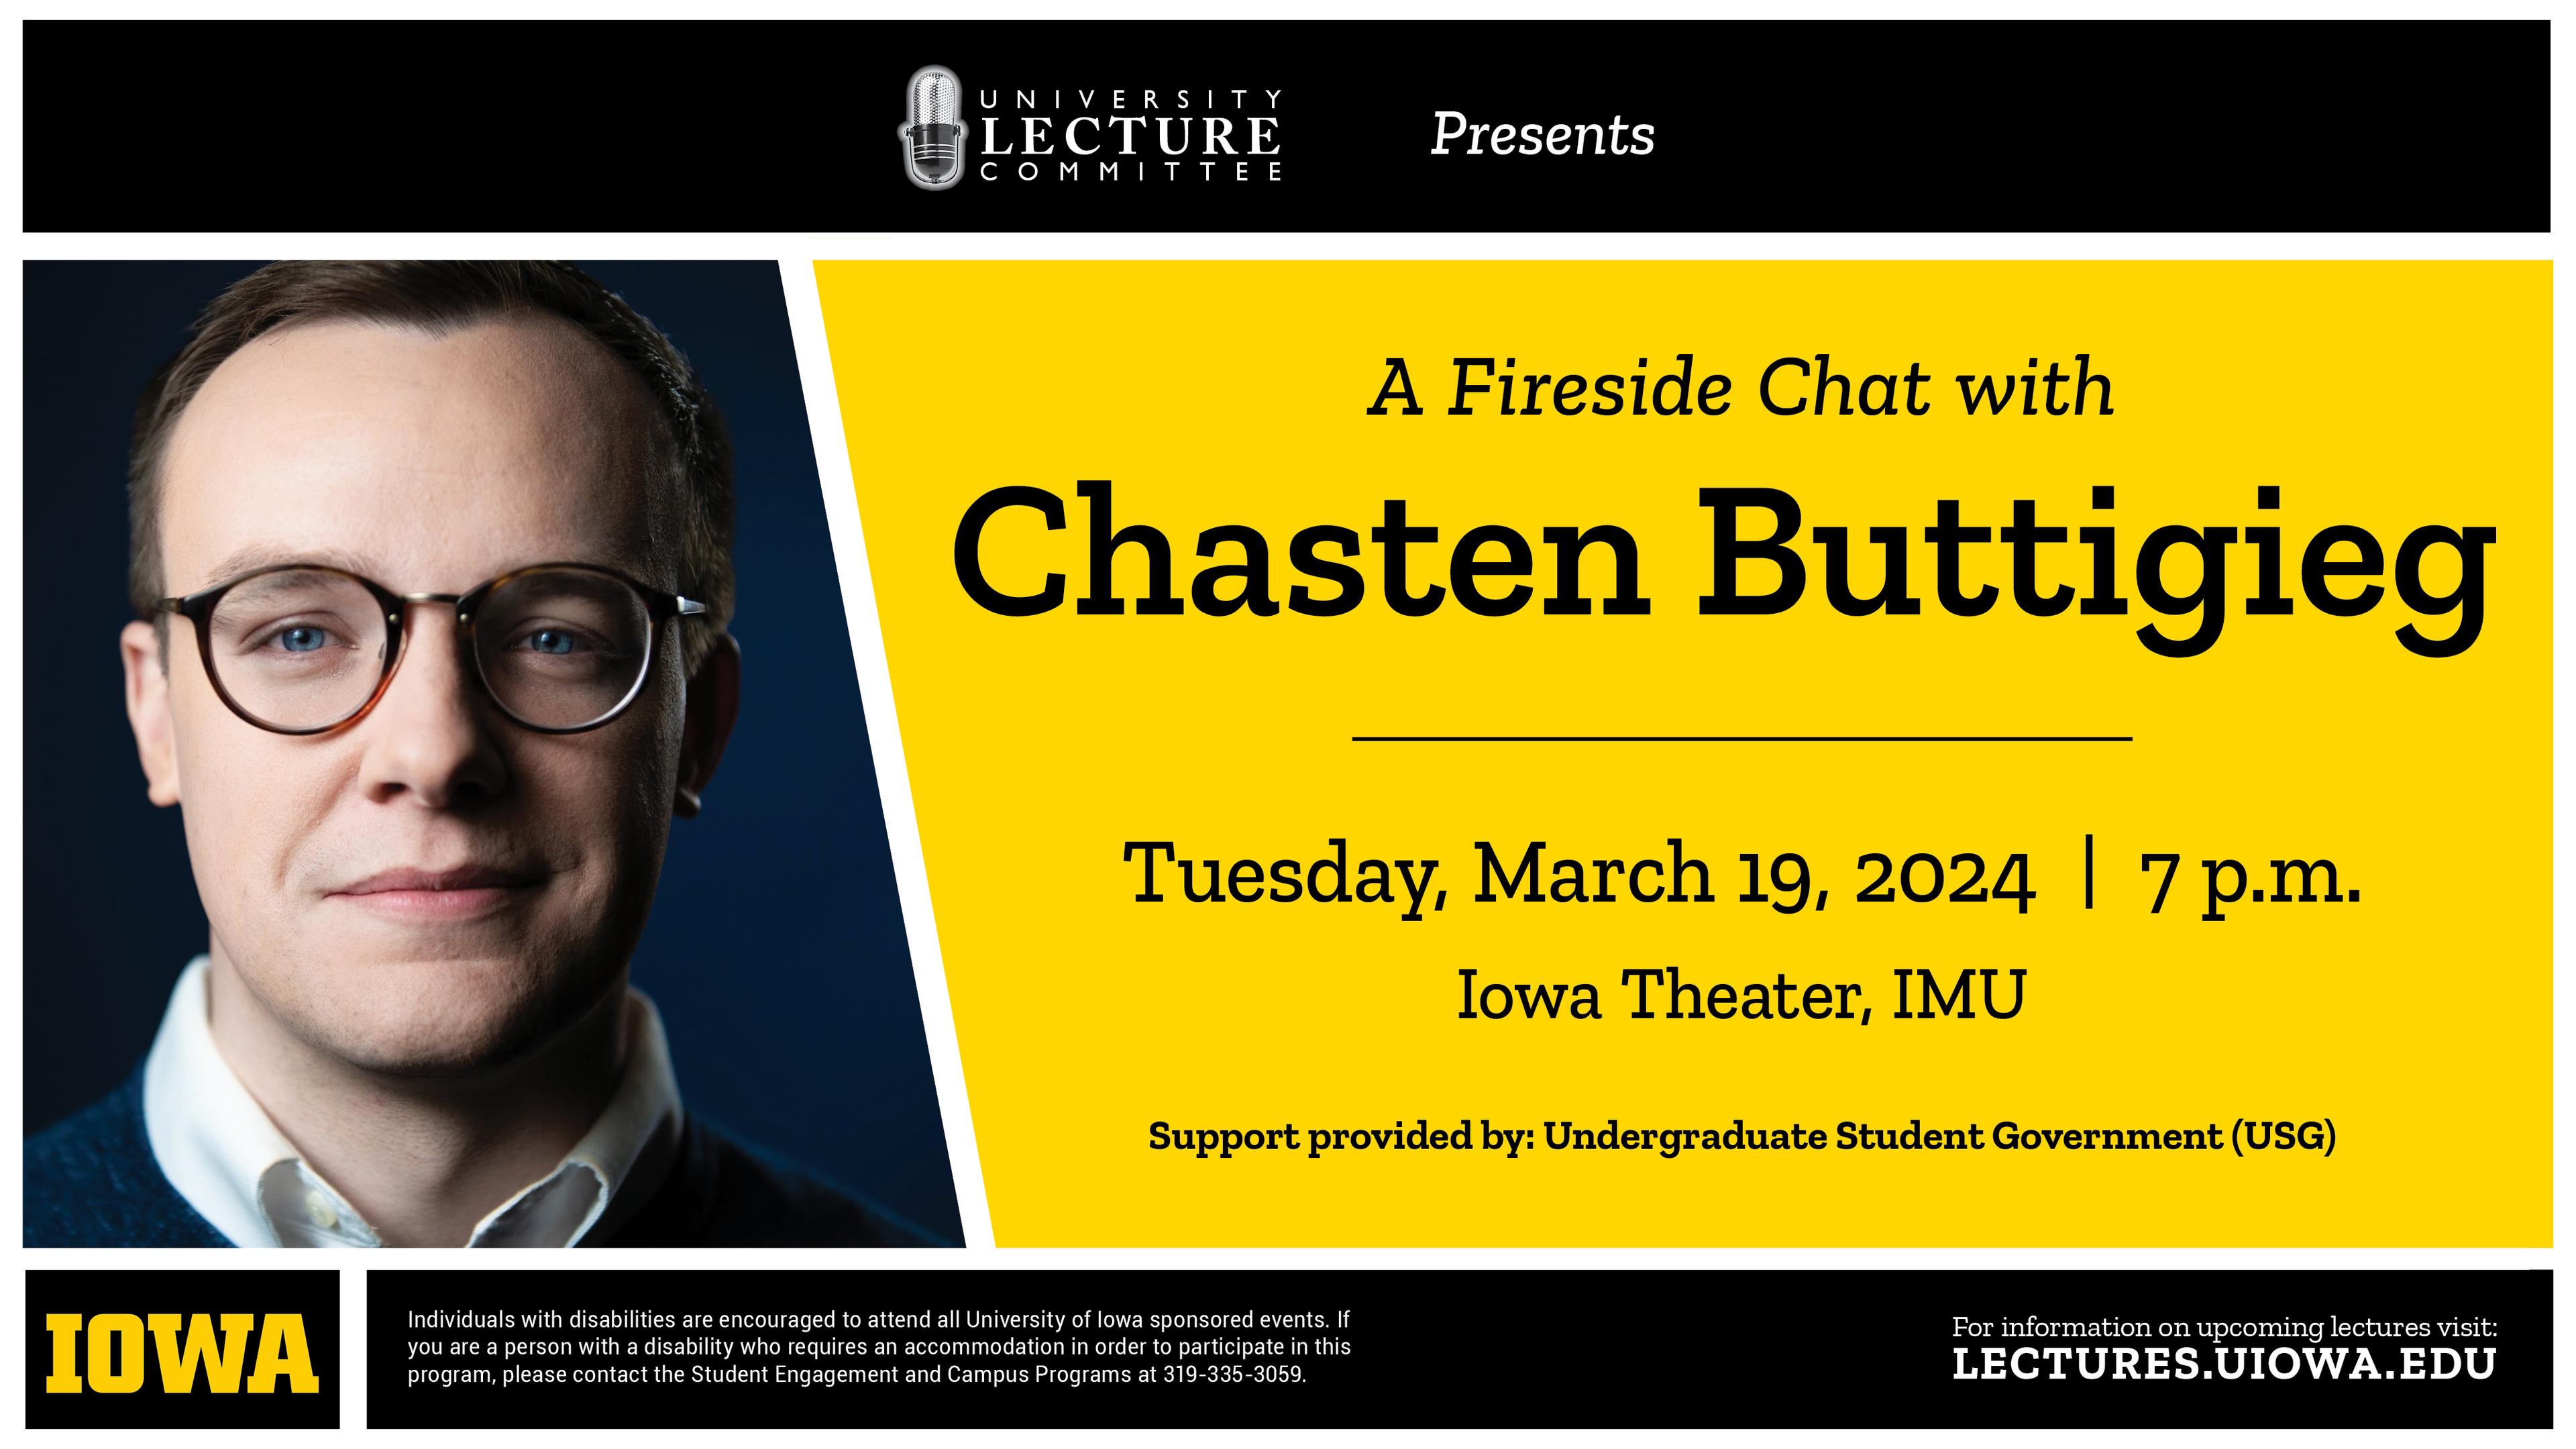 Chasten Buttigieg Tuesday March 19 2024 7 p.m. Iowa Theater IMU